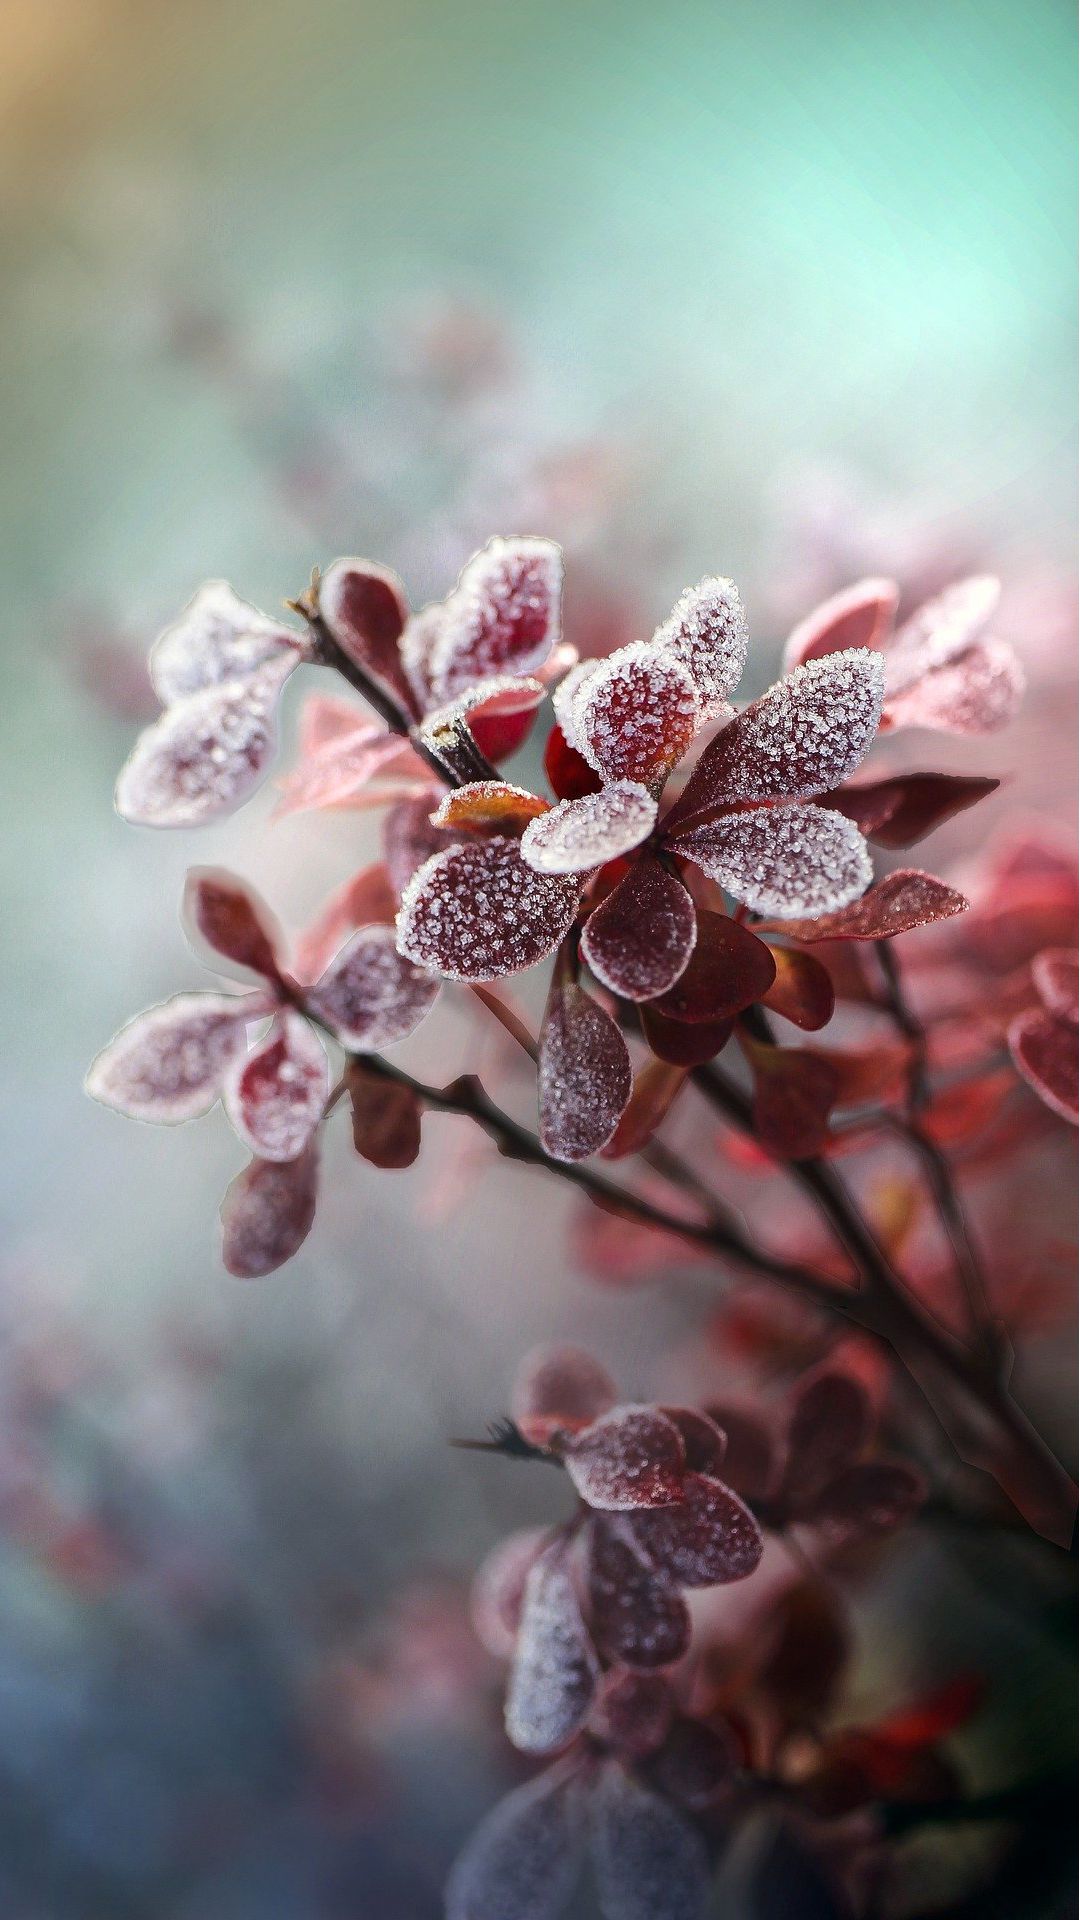 霜冻植物日本小檗 叶子高清微距手机摄影壁纸图片 <span style='color:red;'>寒霜</span>